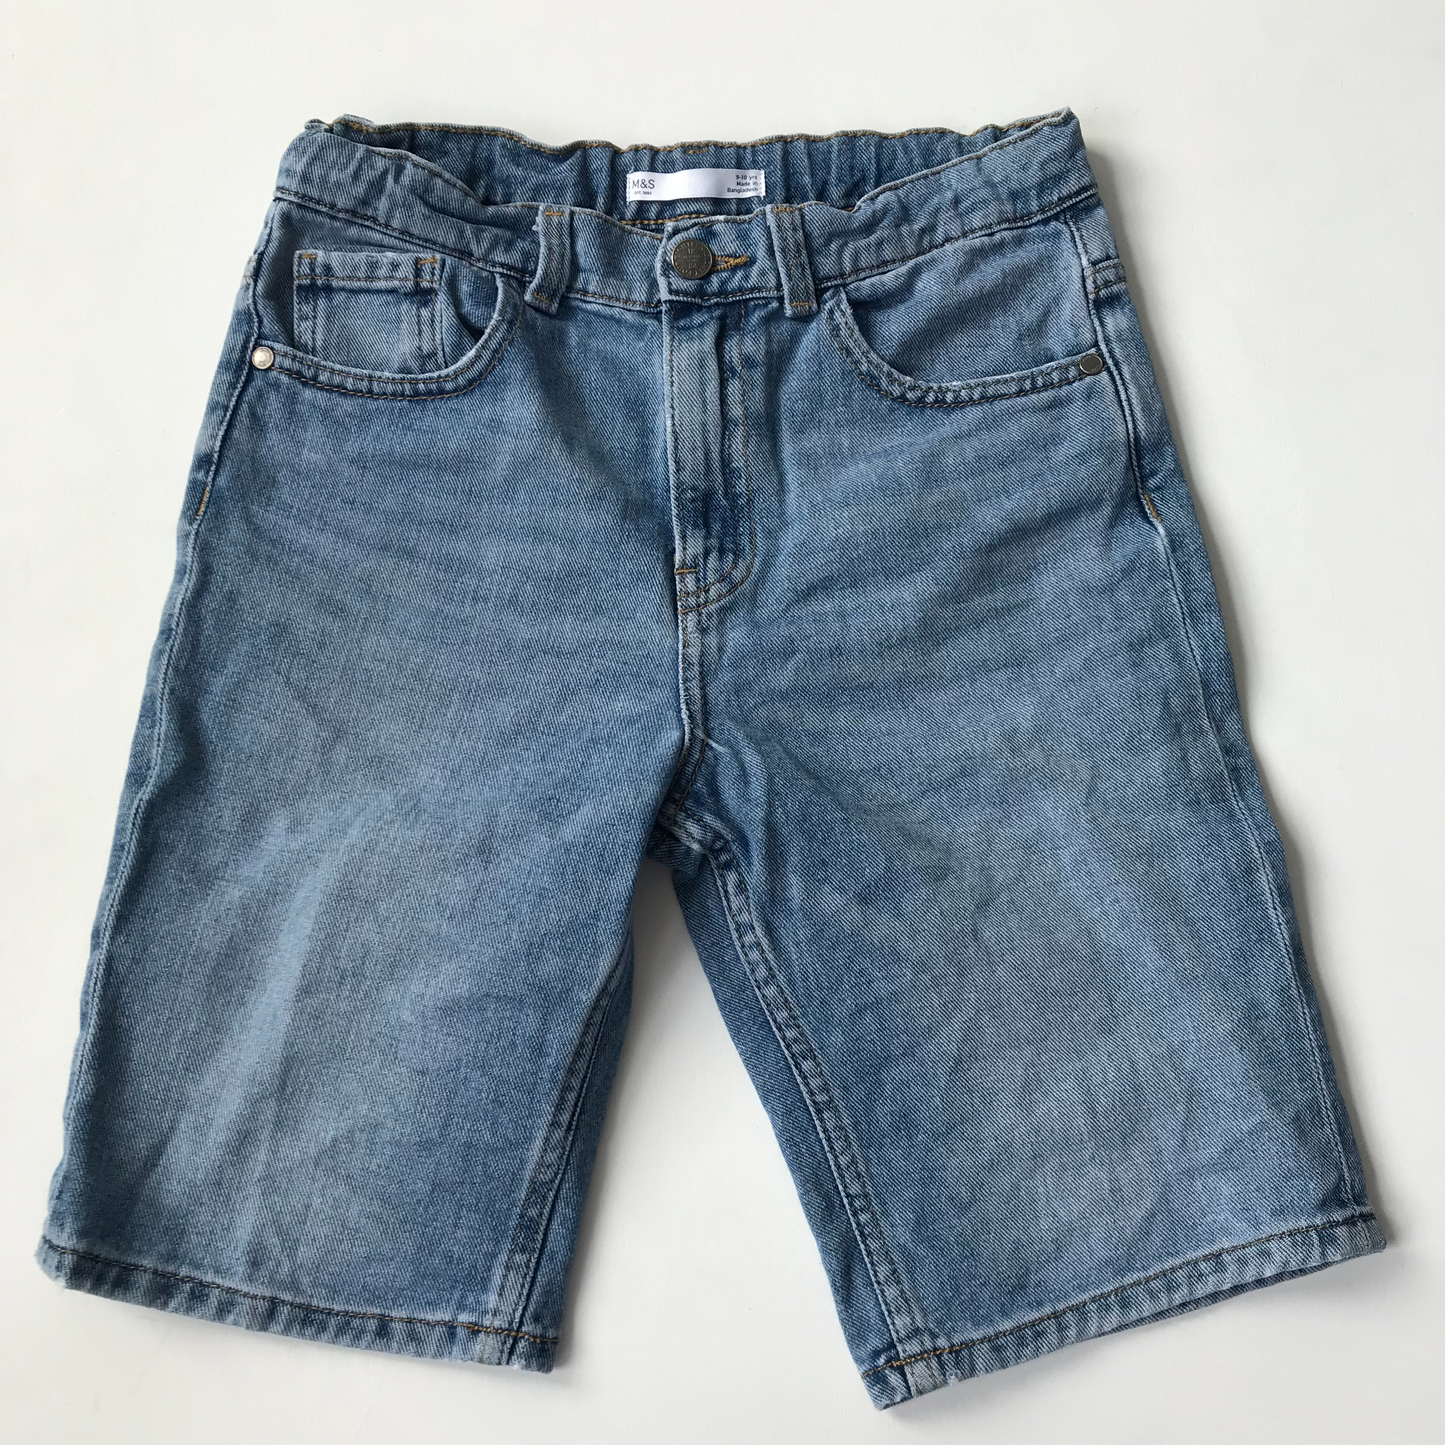 Shorts - Denim M&S - Age 9